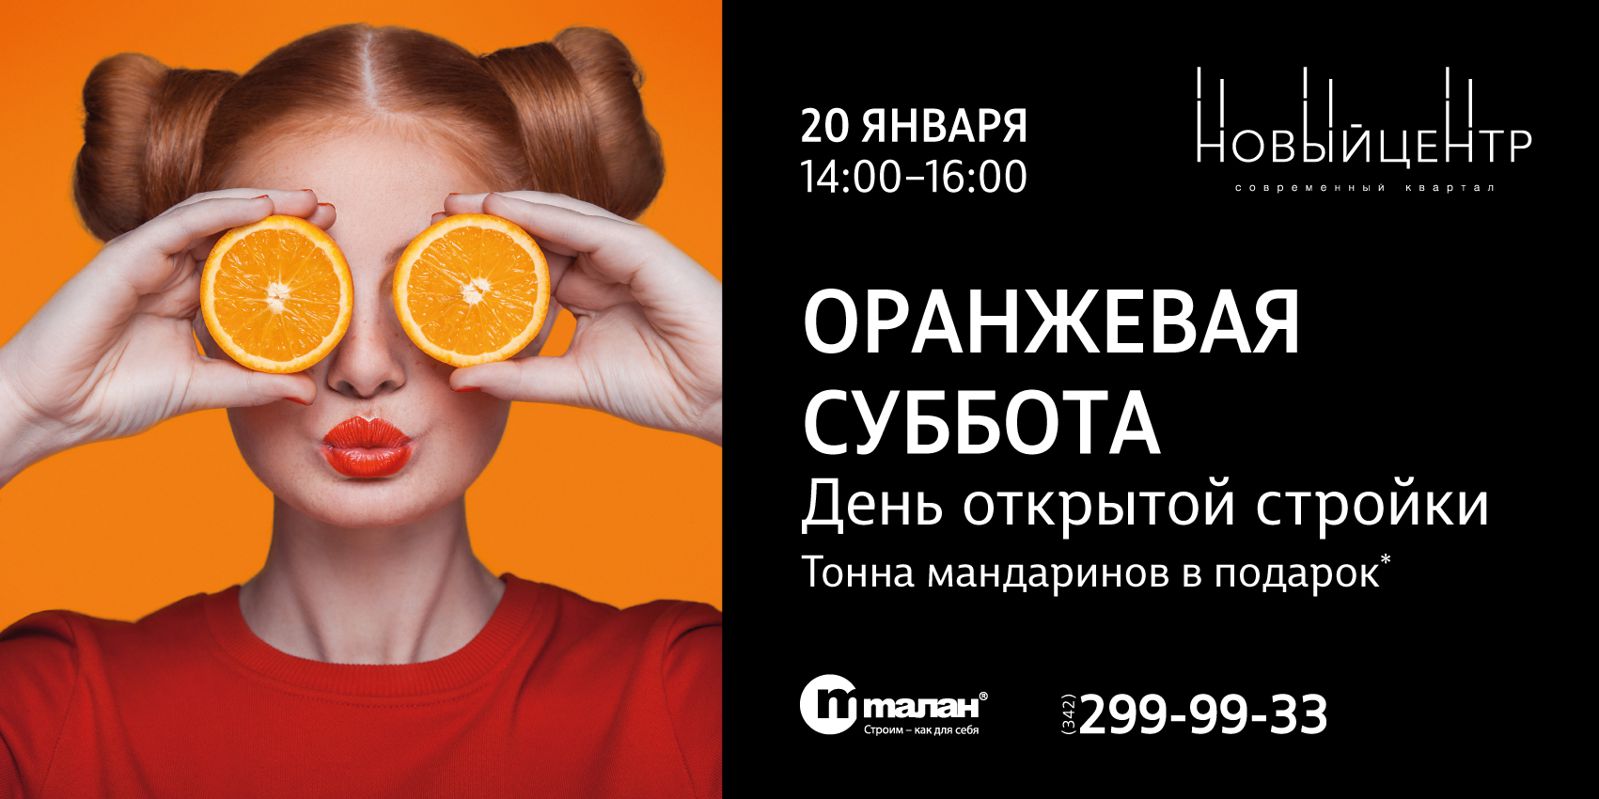 20 января — оранжевая суббота. День открытой стройки в «Новом центре»